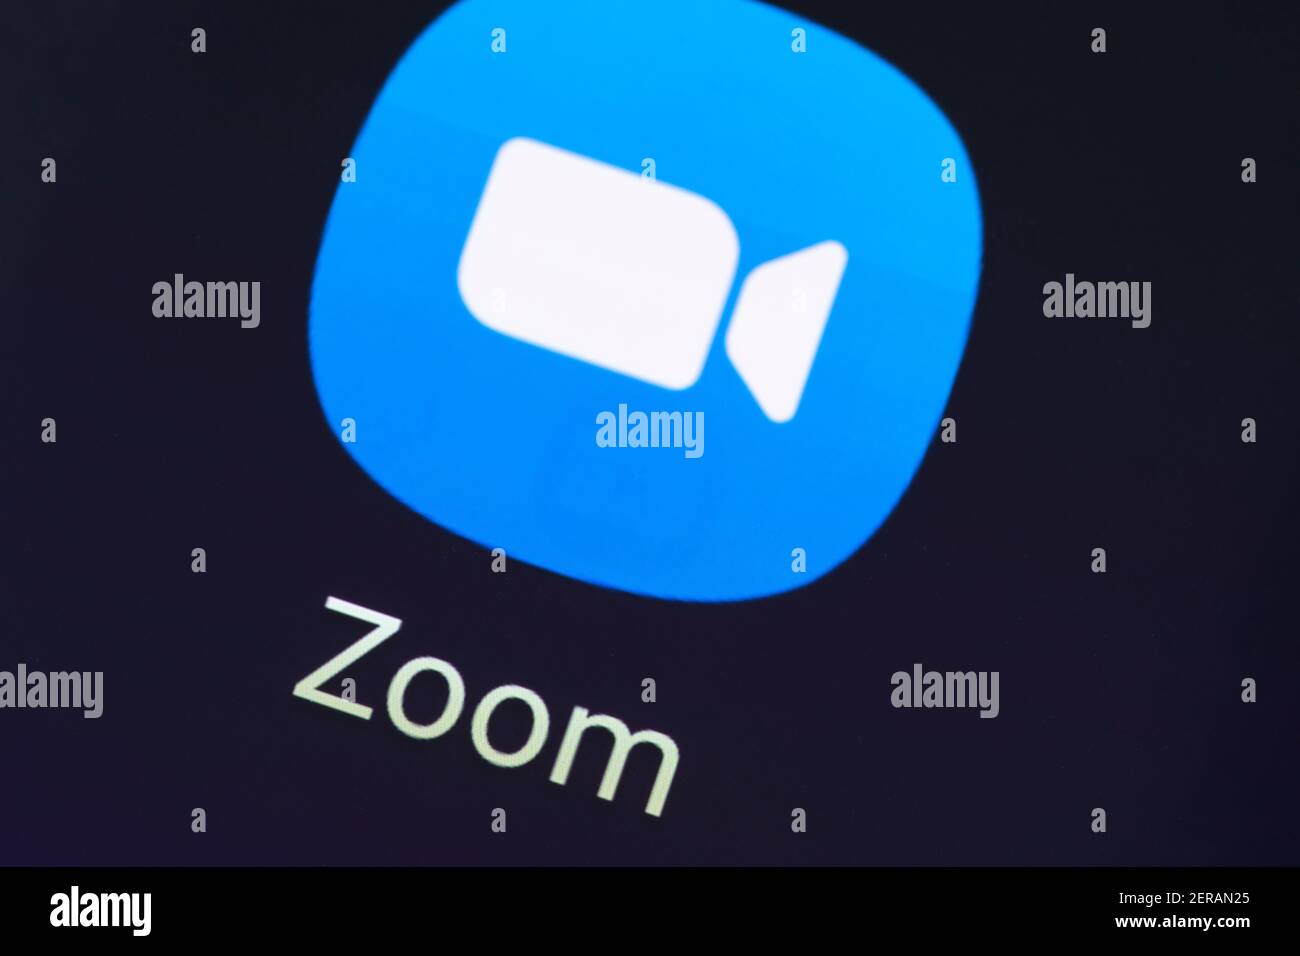 Eine Makroaufnahme des Zoom App Logos auf einem Smartphone Bildschirm. Zoom ist ein Videotelefony Software-Programm von Zoom Video Communications entwickelt Stockfoto